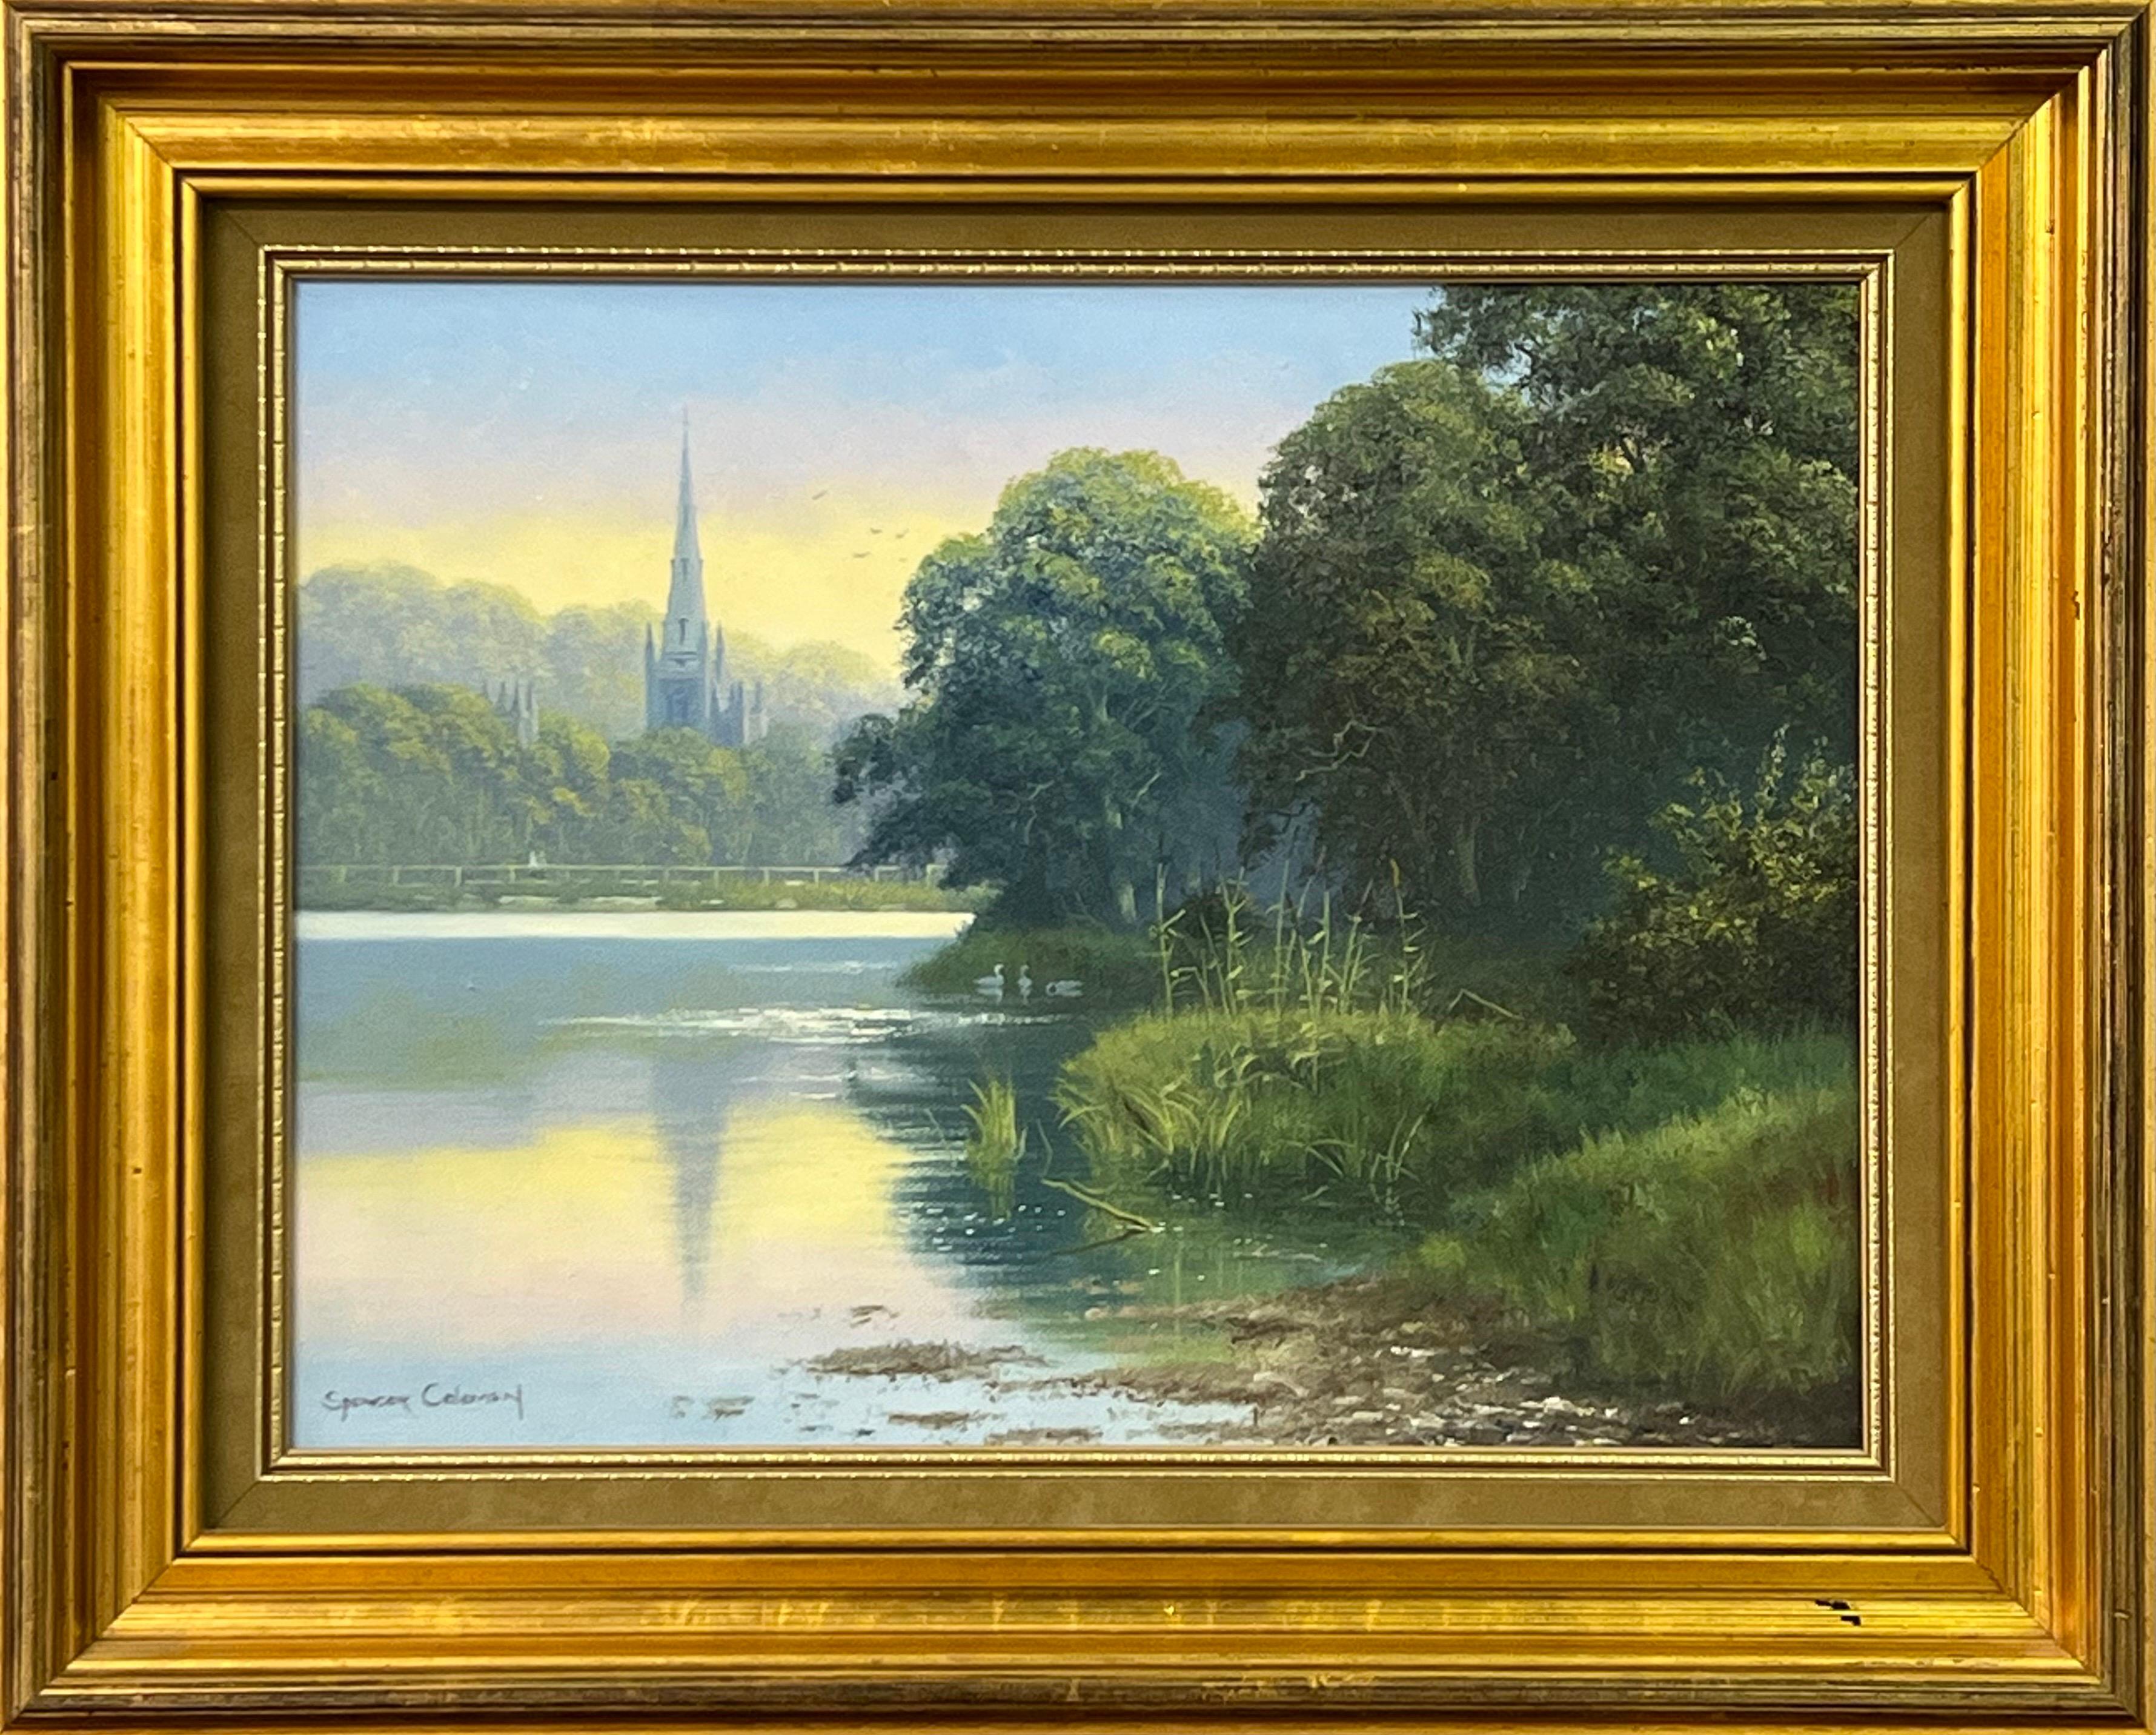 Gemälde einer ländlichen irischen Landschaft mit Swan Lake & Church's Reflections